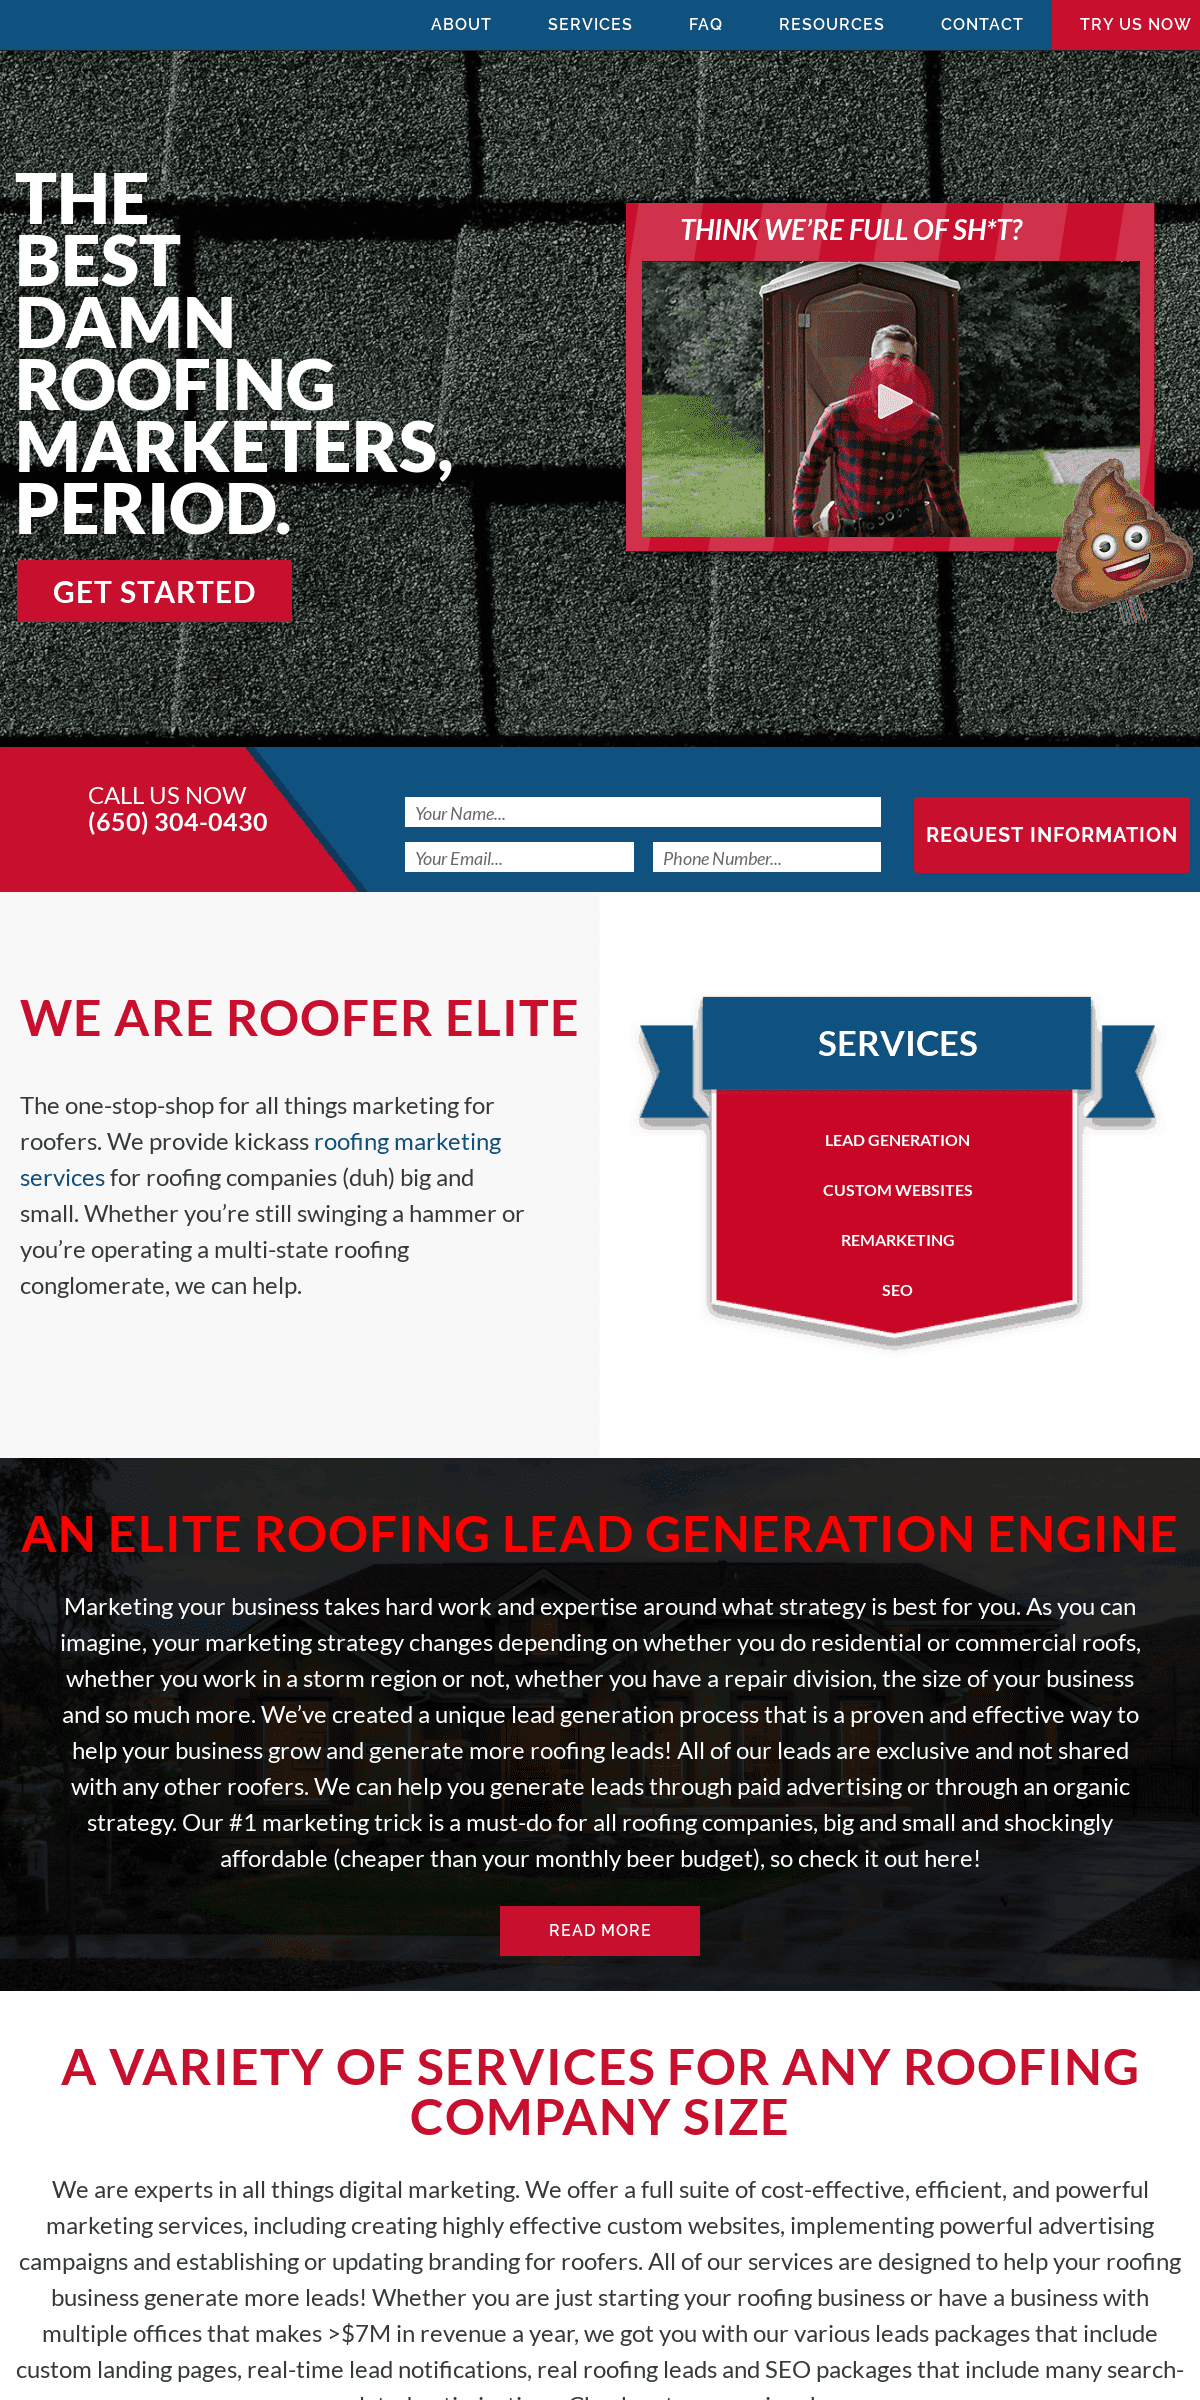 A complete backup of rooferelite.com